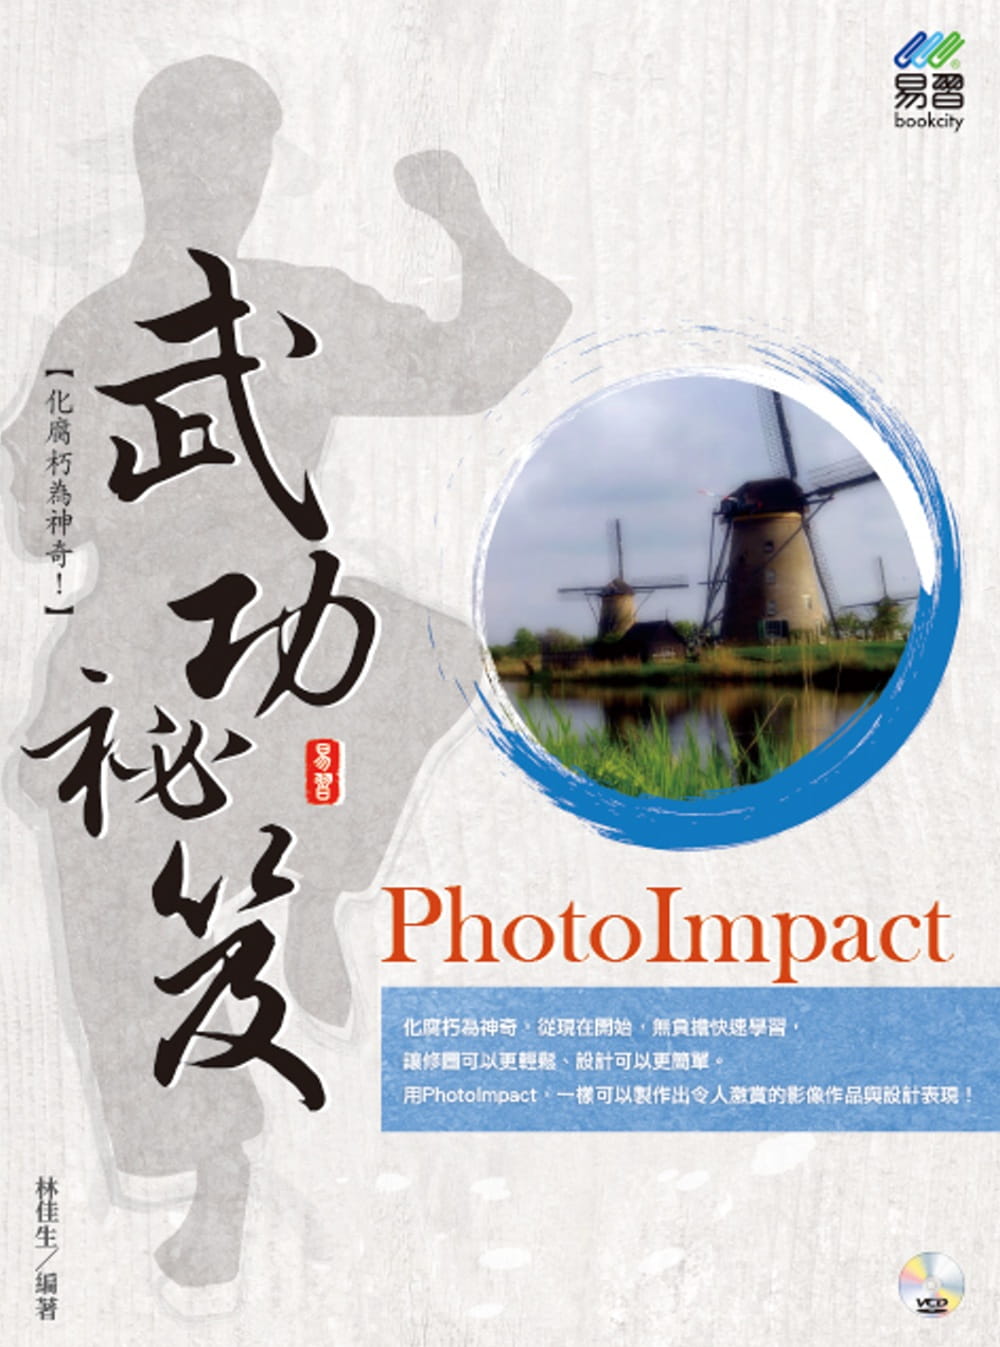 PhotoImpact